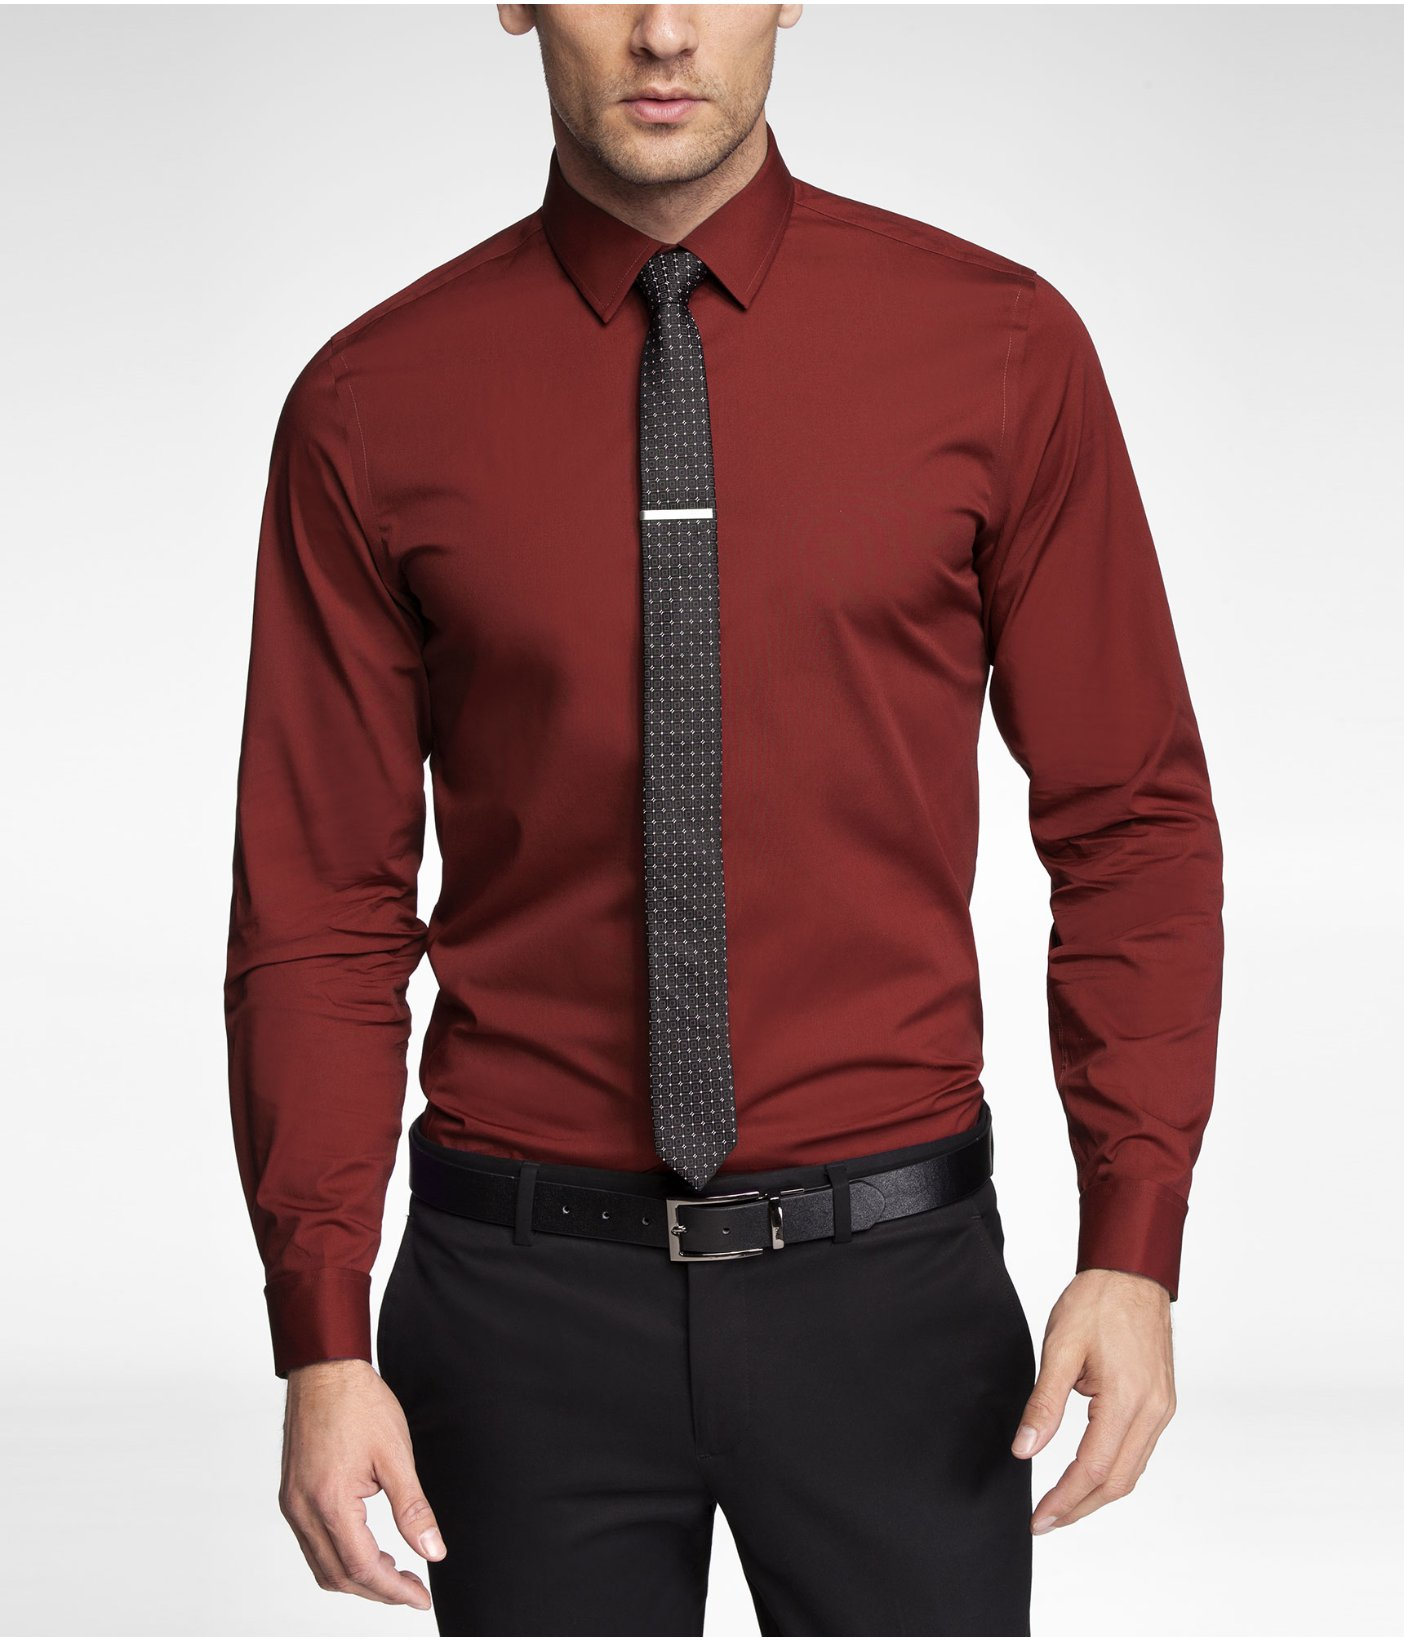 express red dress shirt Big sale - OFF 69%